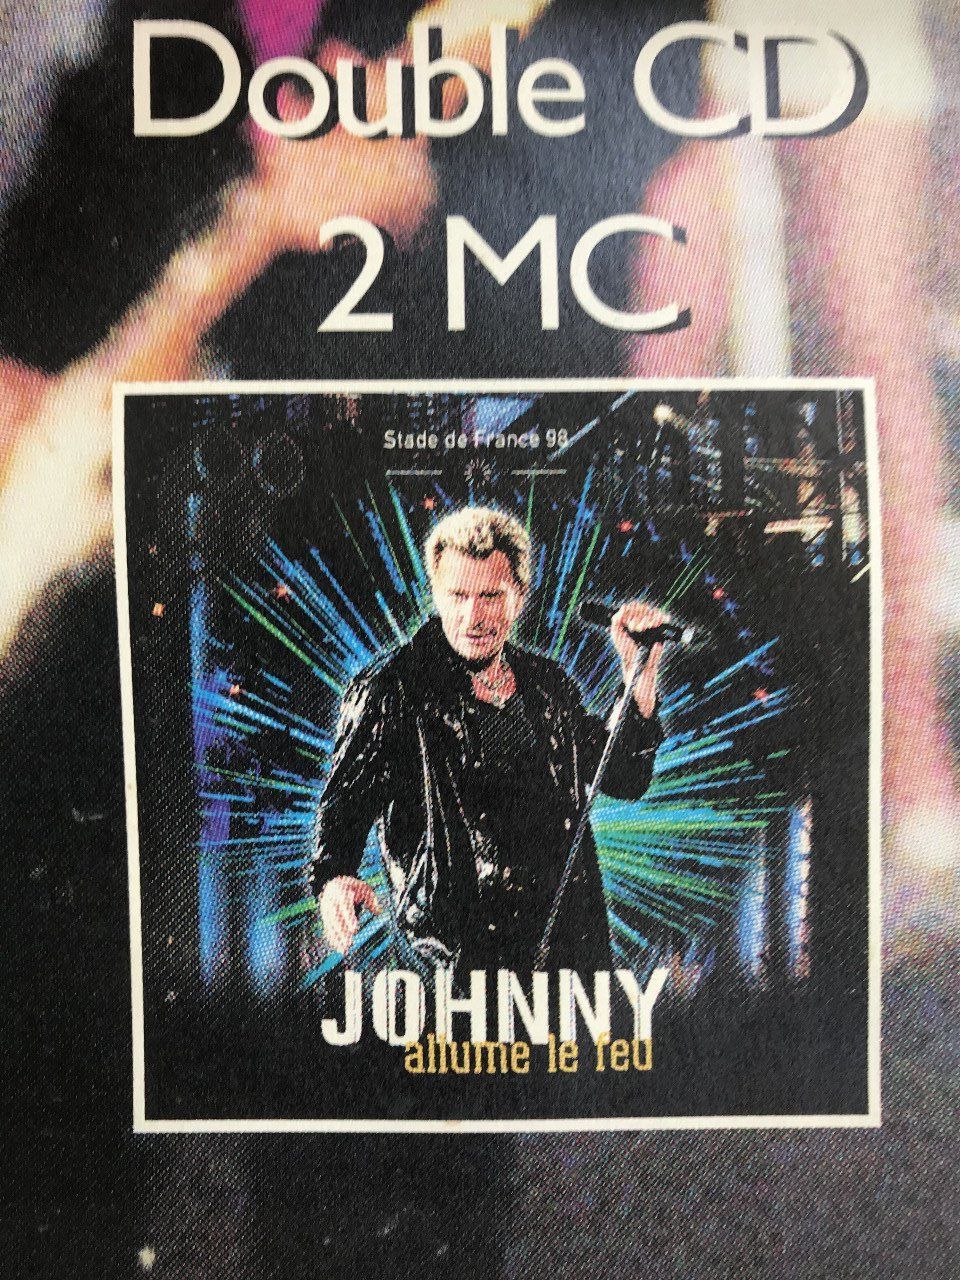 JOHNNY HALLYDAY, Affiche originale du concert Allume le feu au